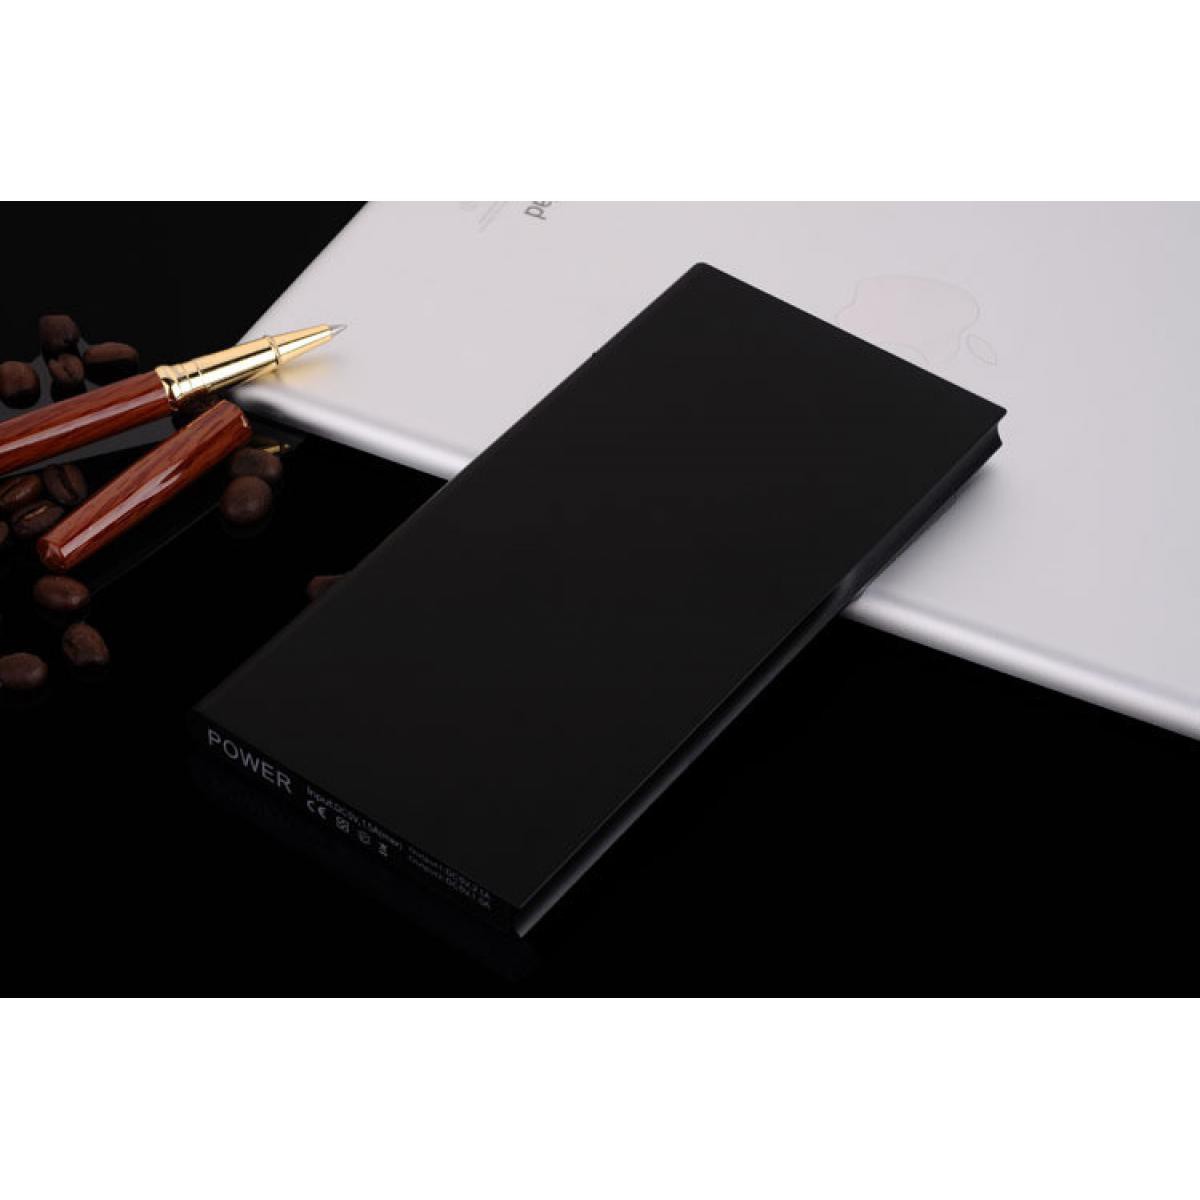 Shot - Batterie Externe Plate pour SAMSUNG Galaxy Note 20 Ultra Smartphone Tablette Chargeur Power Bank 6000mAh 2 Port USB (NOIR) - Chargeur secteur téléphone